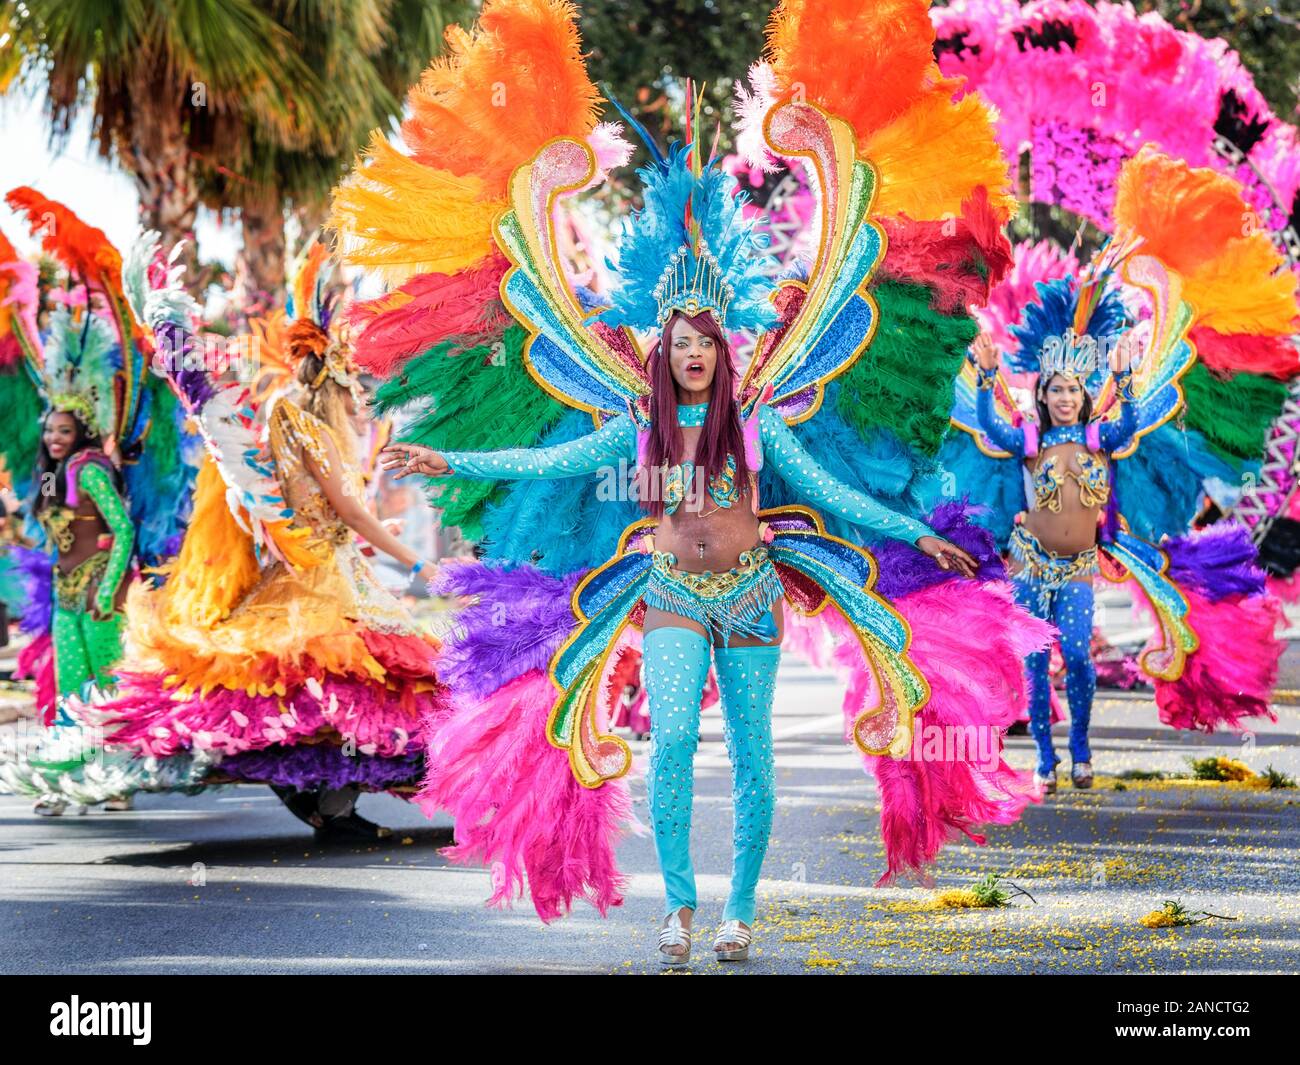 Interprète en costume aux couleurs vives à la Flower Parade, Nice Carnival, Côte d'Azur, France. Banque D'Images